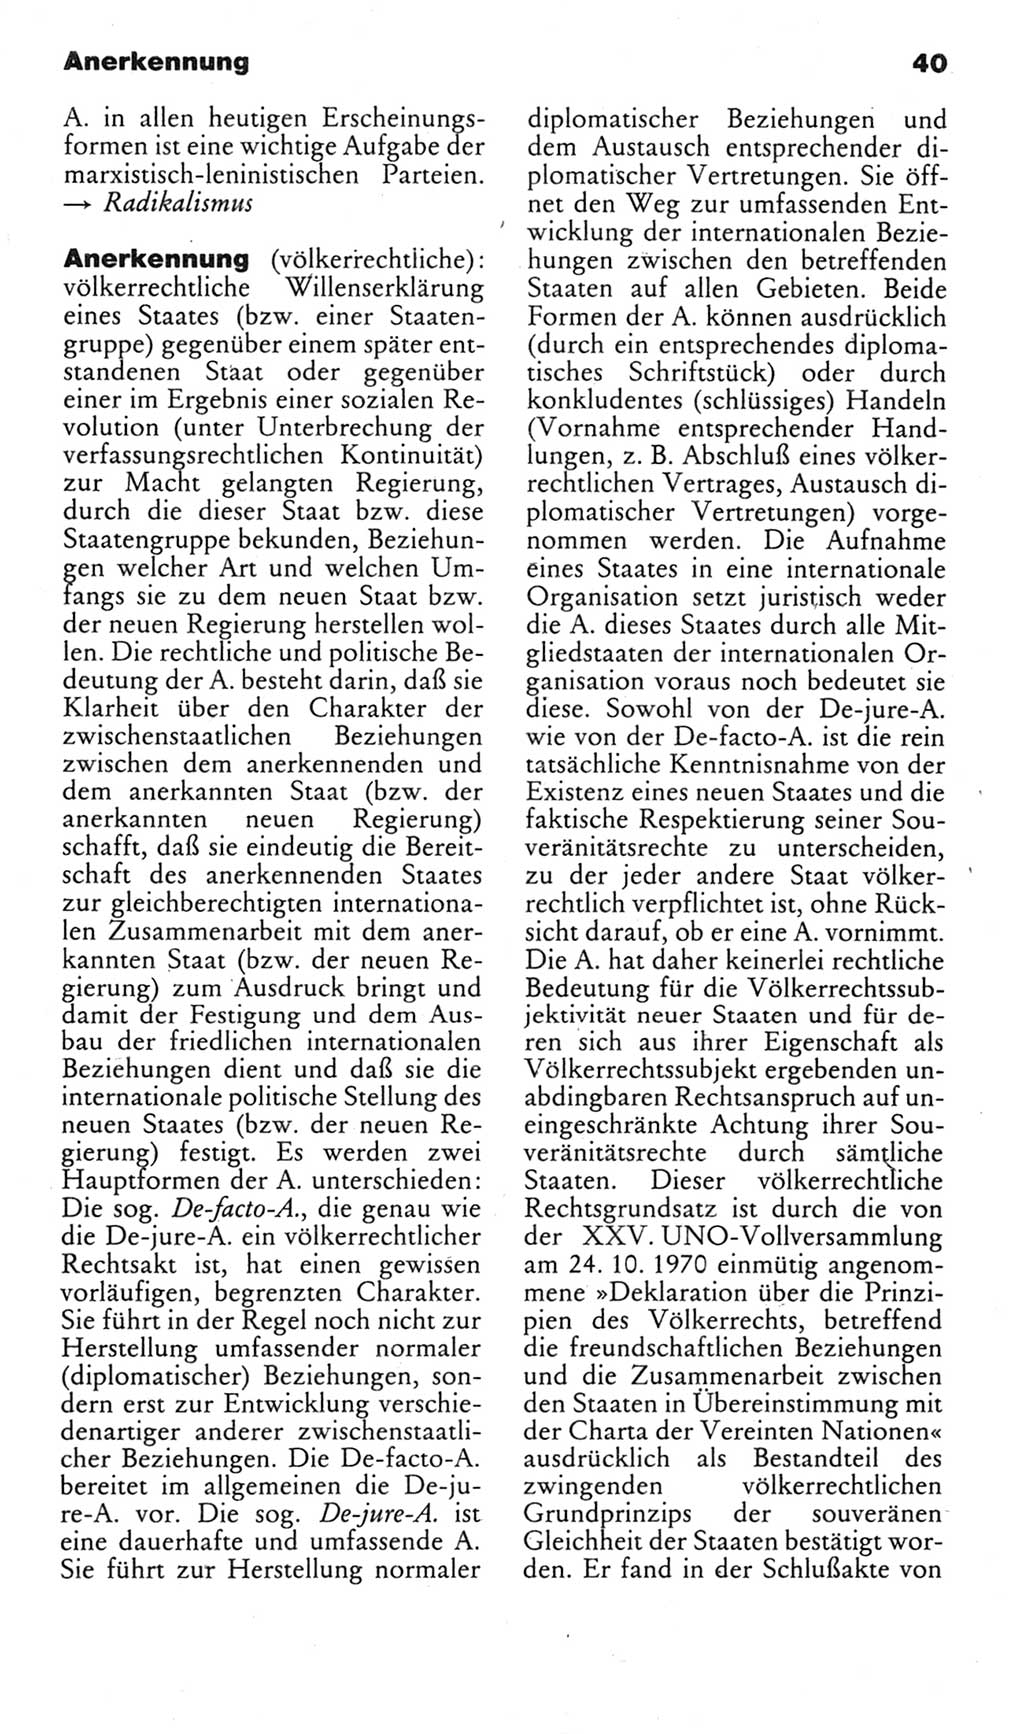 Kleines politisches Wörterbuch [Deutsche Demokratische Republik (DDR)] 1983, Seite 40 (Kl. pol. Wb. DDR 1983, S. 40)